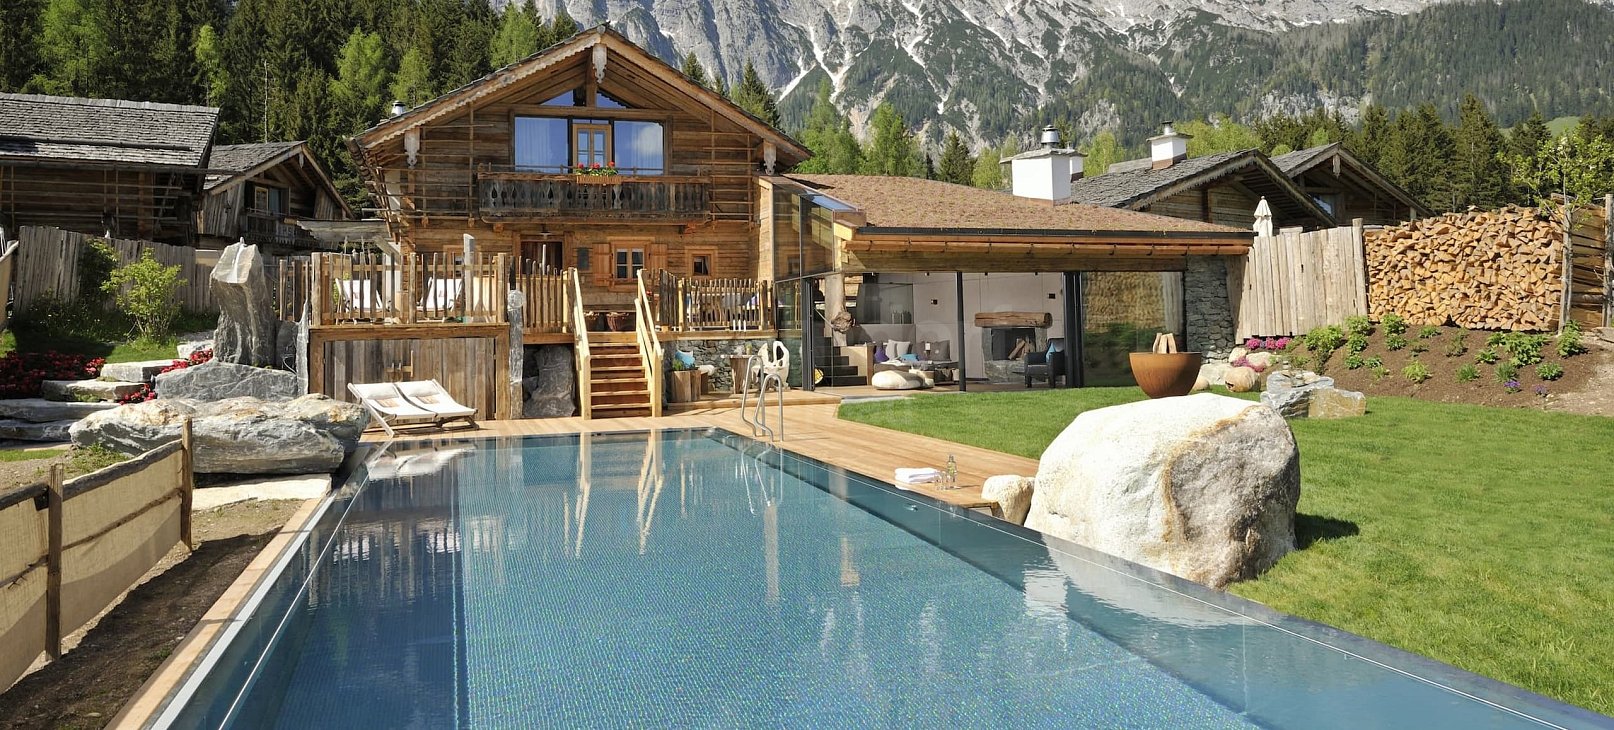 Privátní bazén s přelivem a infinity sníženým žlábkem Bergdorf 15